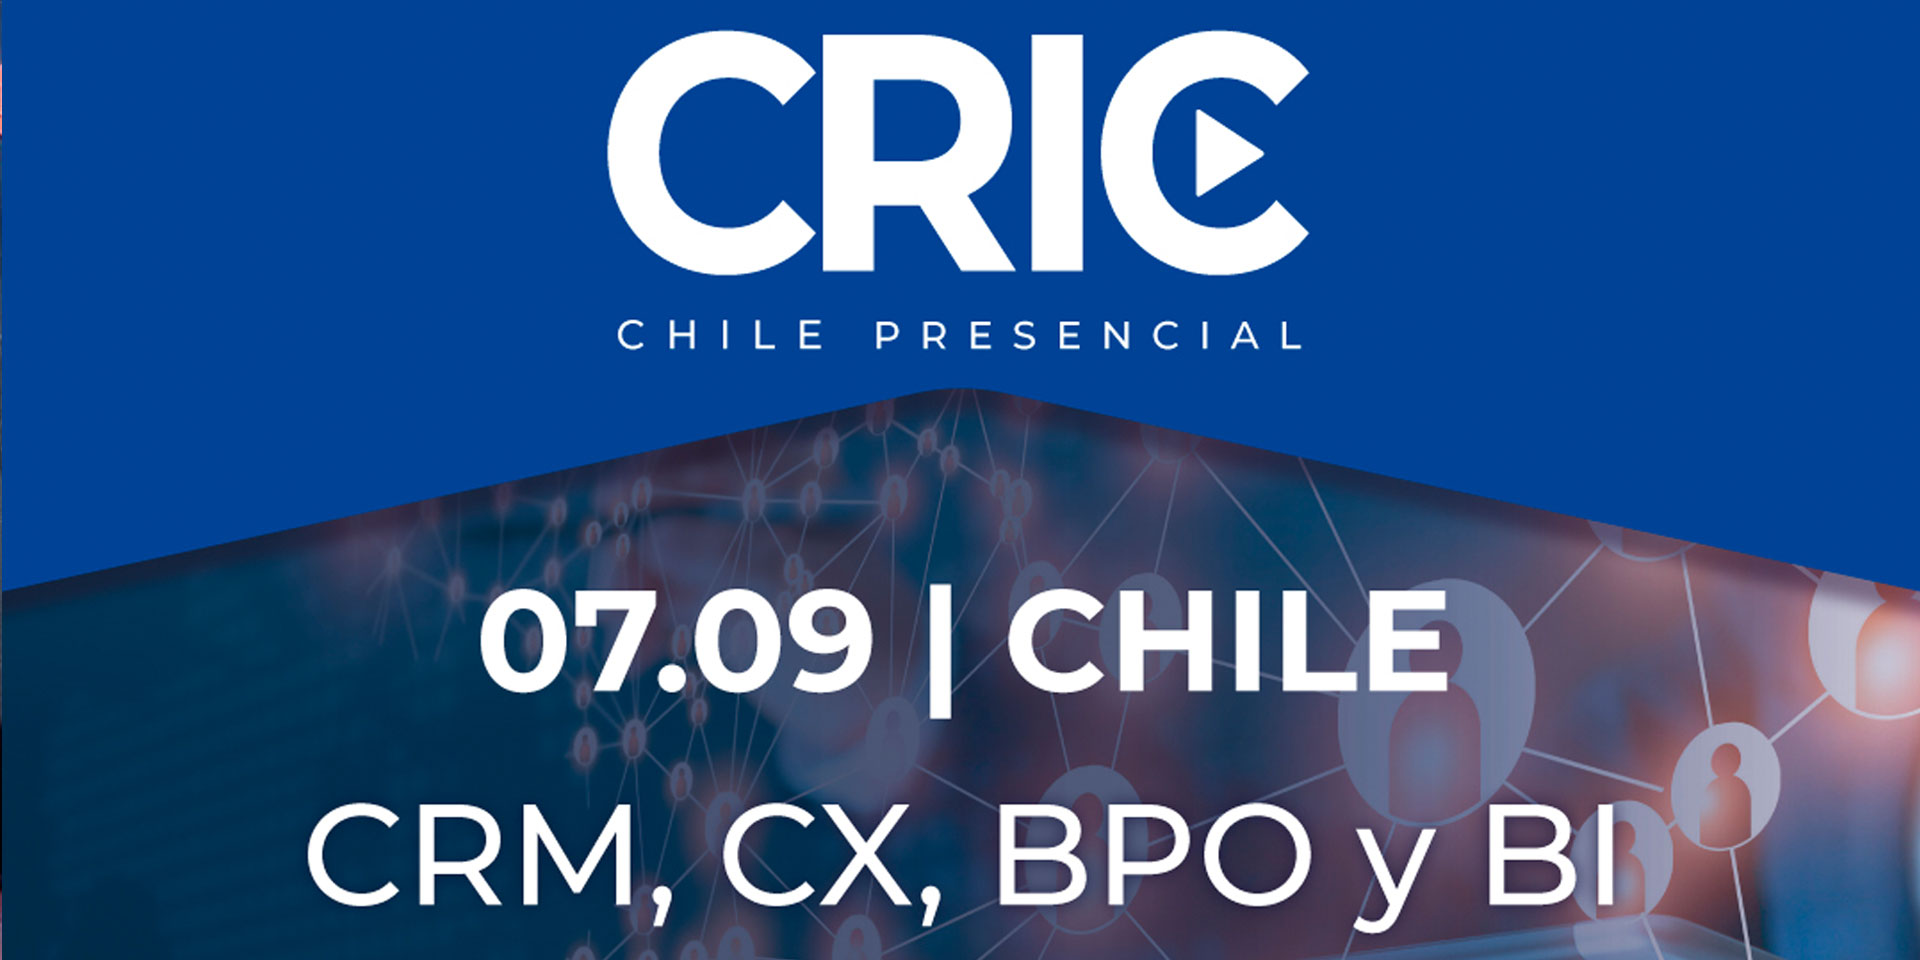 Descuento exclusivo para socios AMDD en el Congreso CRIC Chile presencial